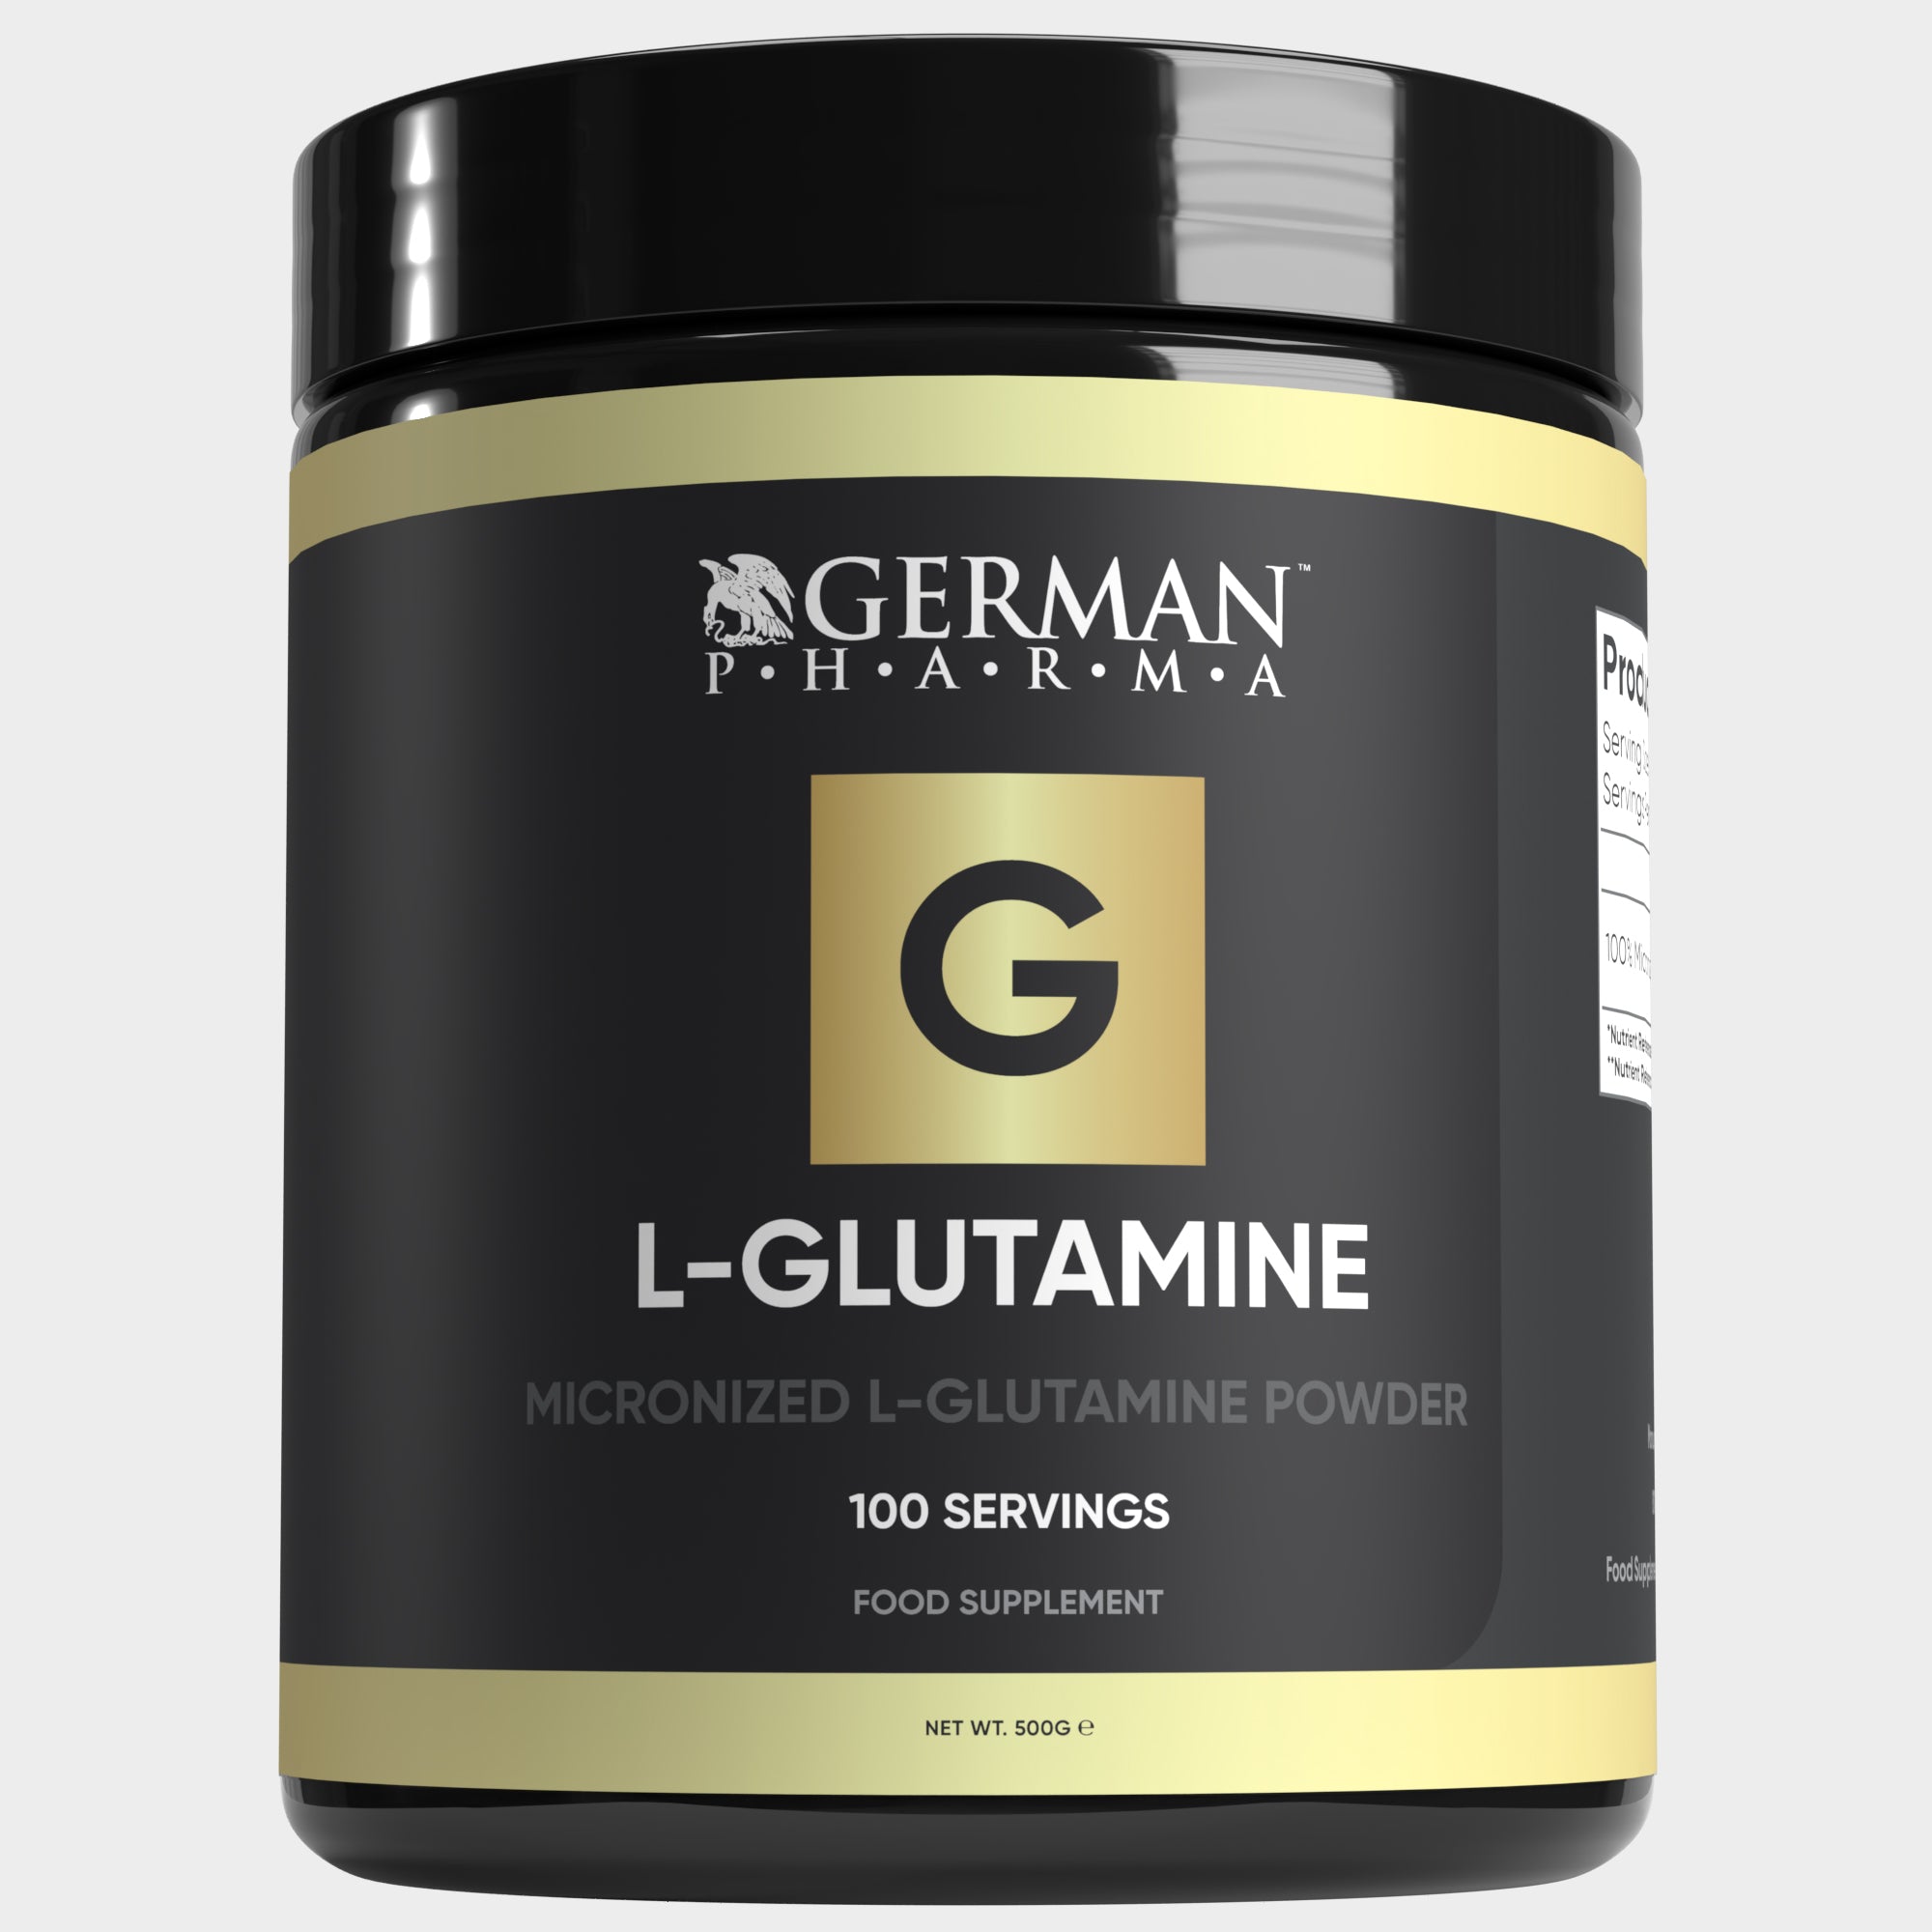 L-Glutamine 